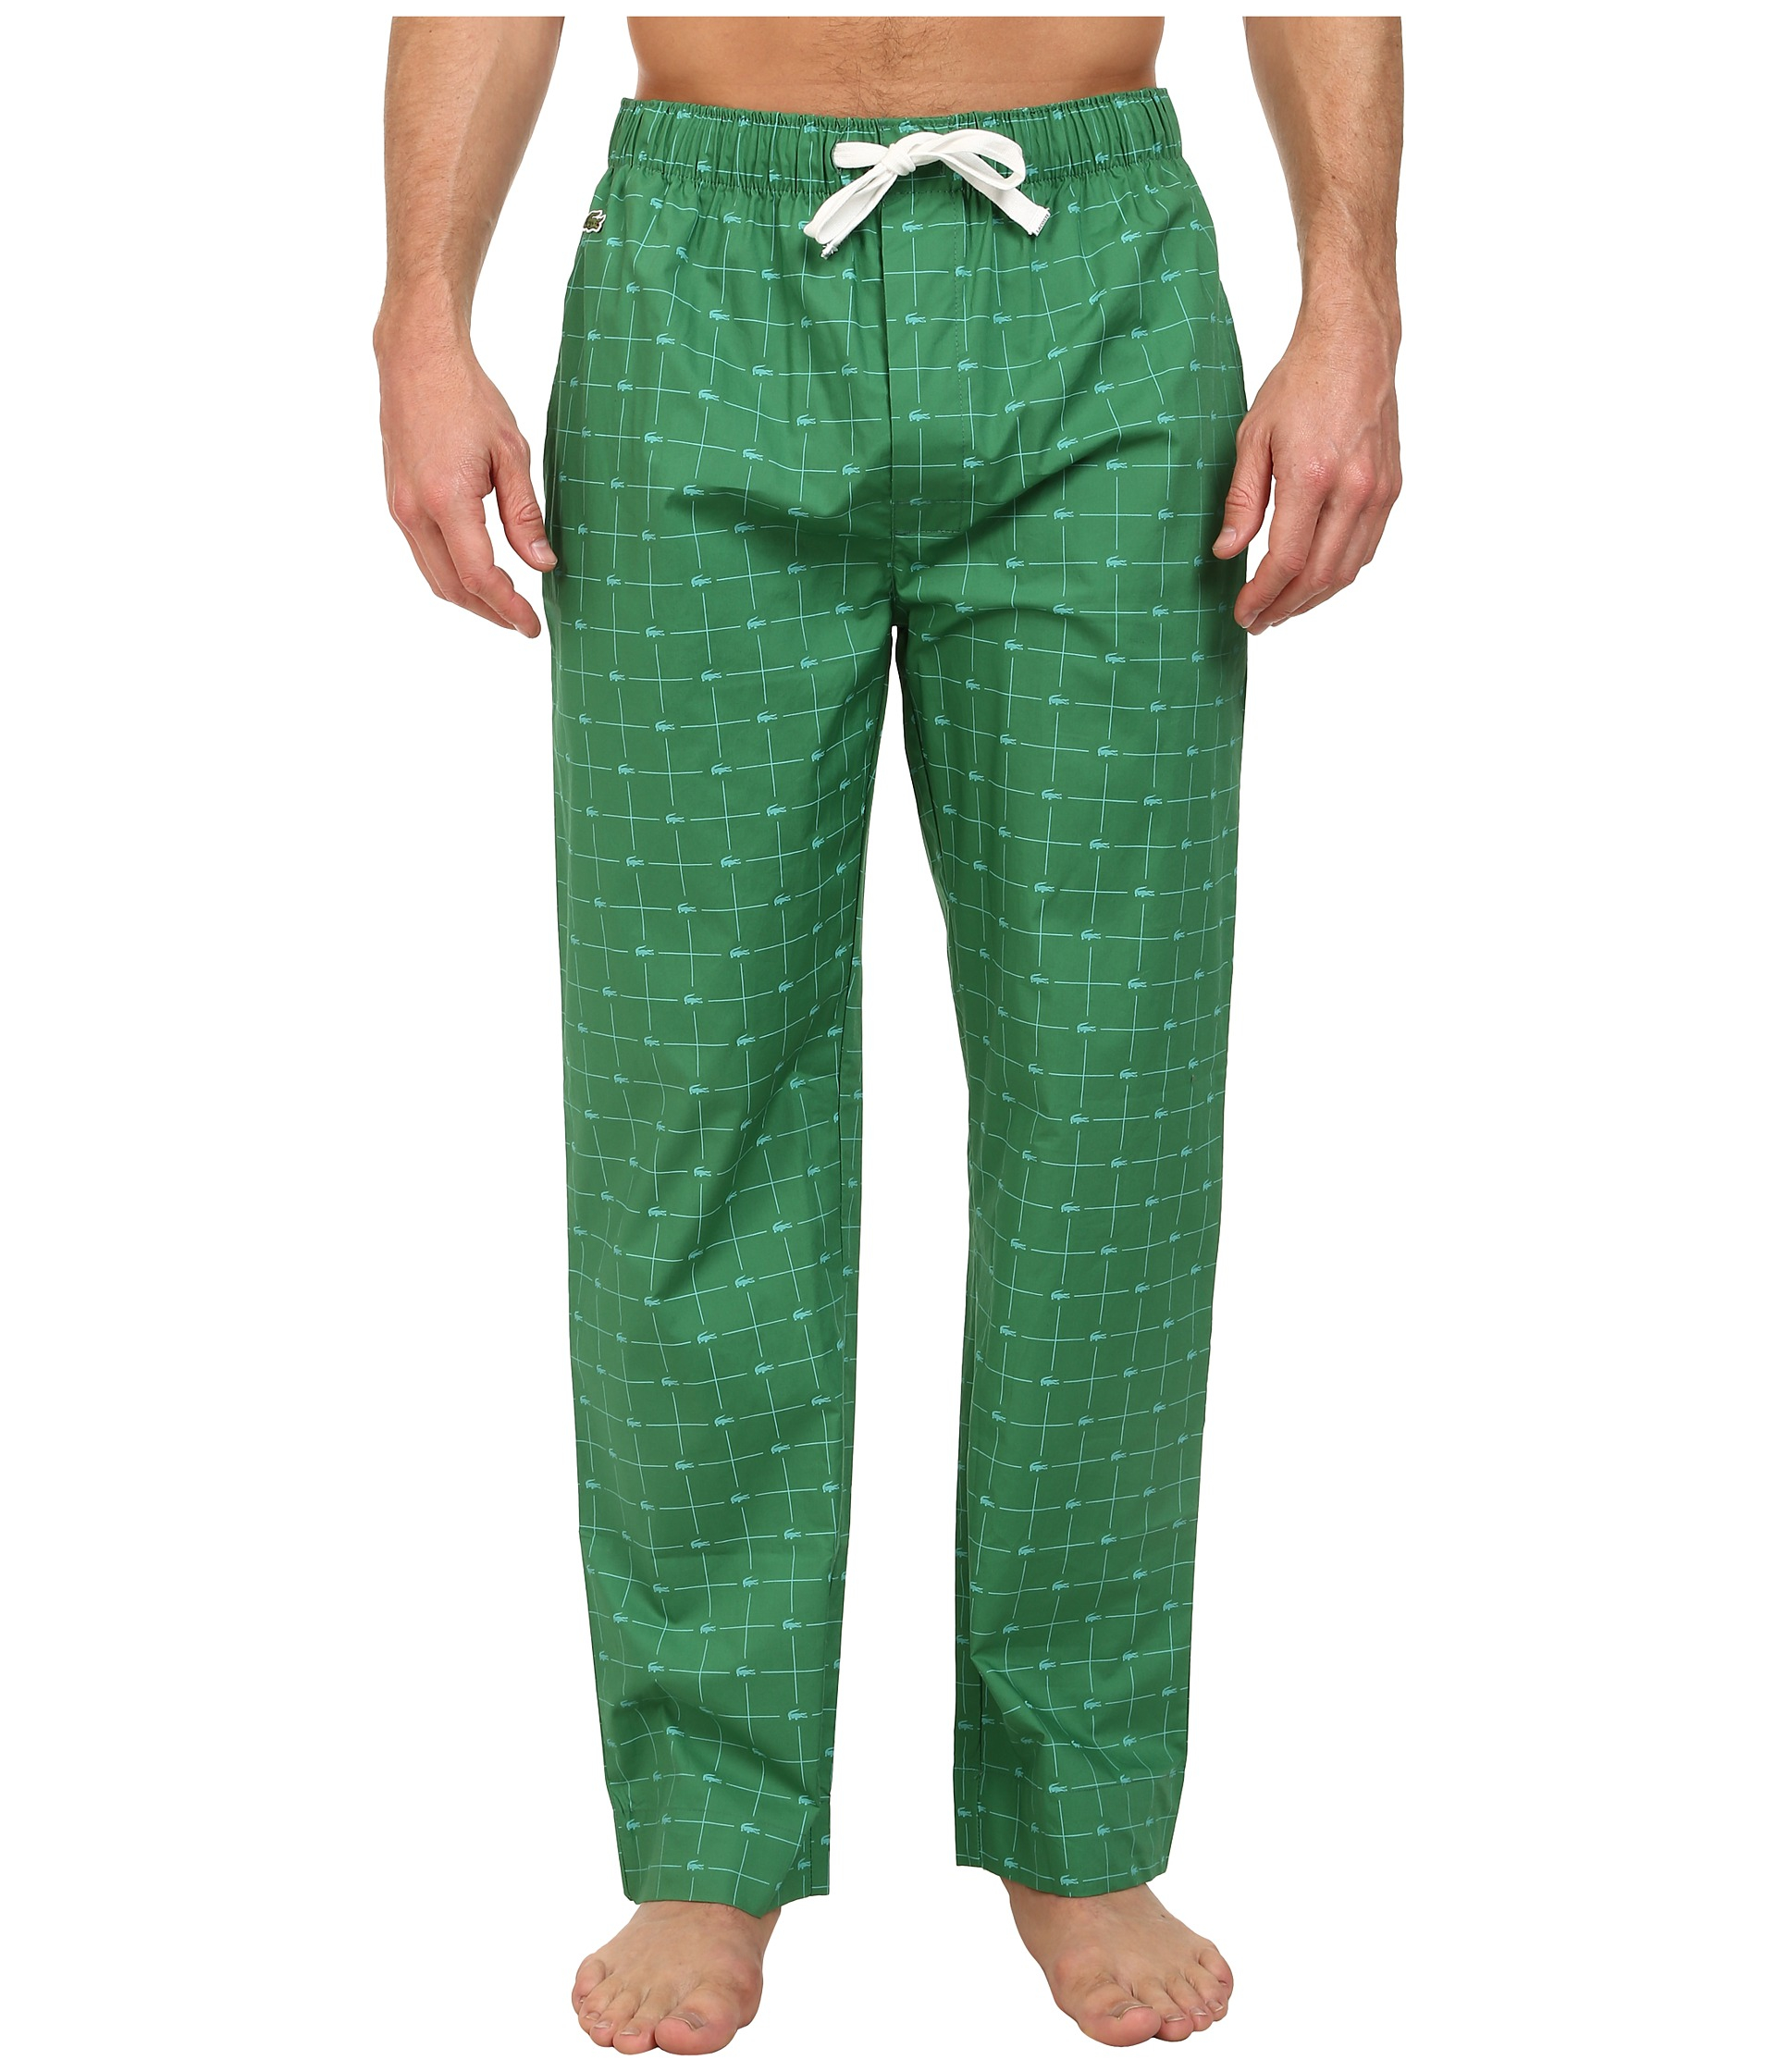 Lacoste Baseline Croc Pants in Green for Men - Lyst